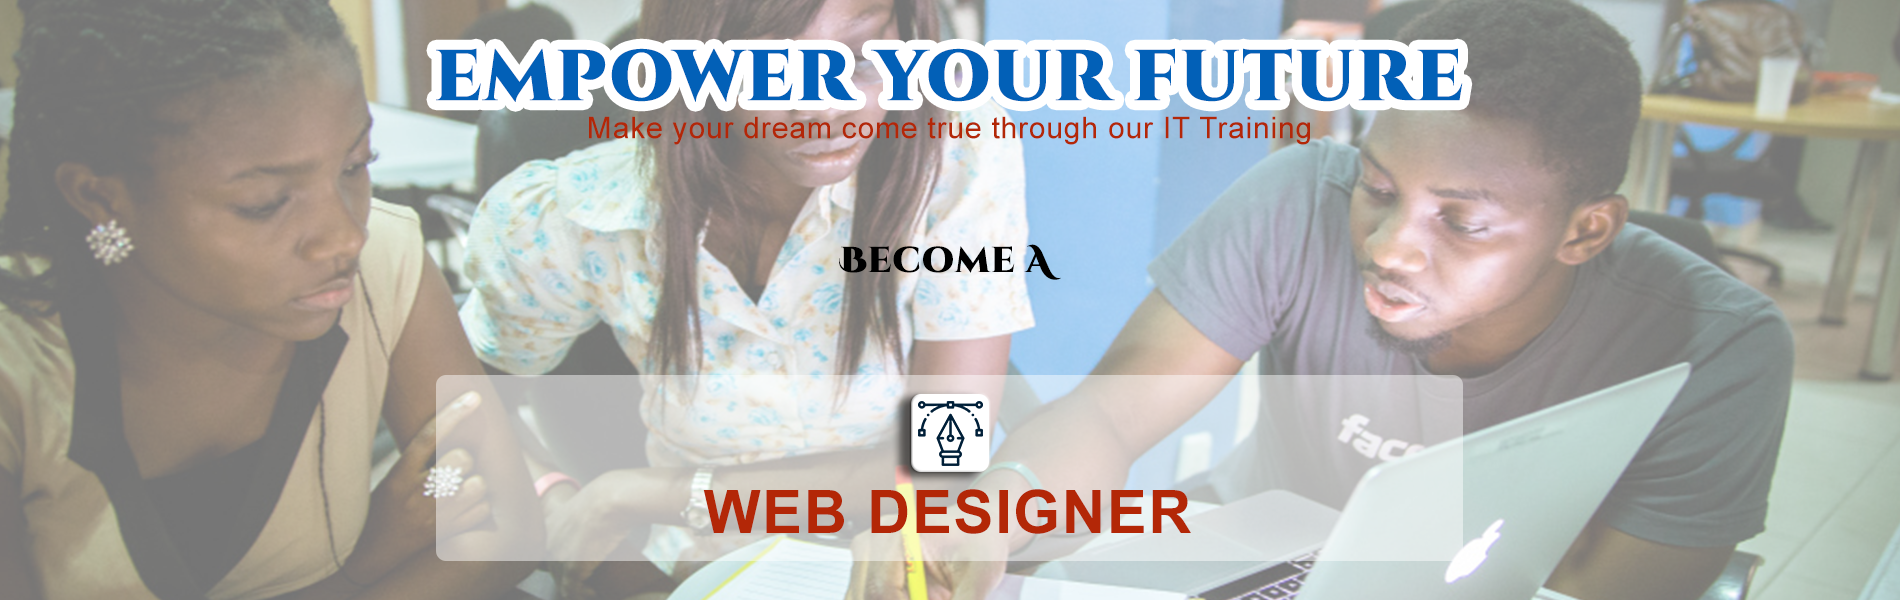 Website Design Training